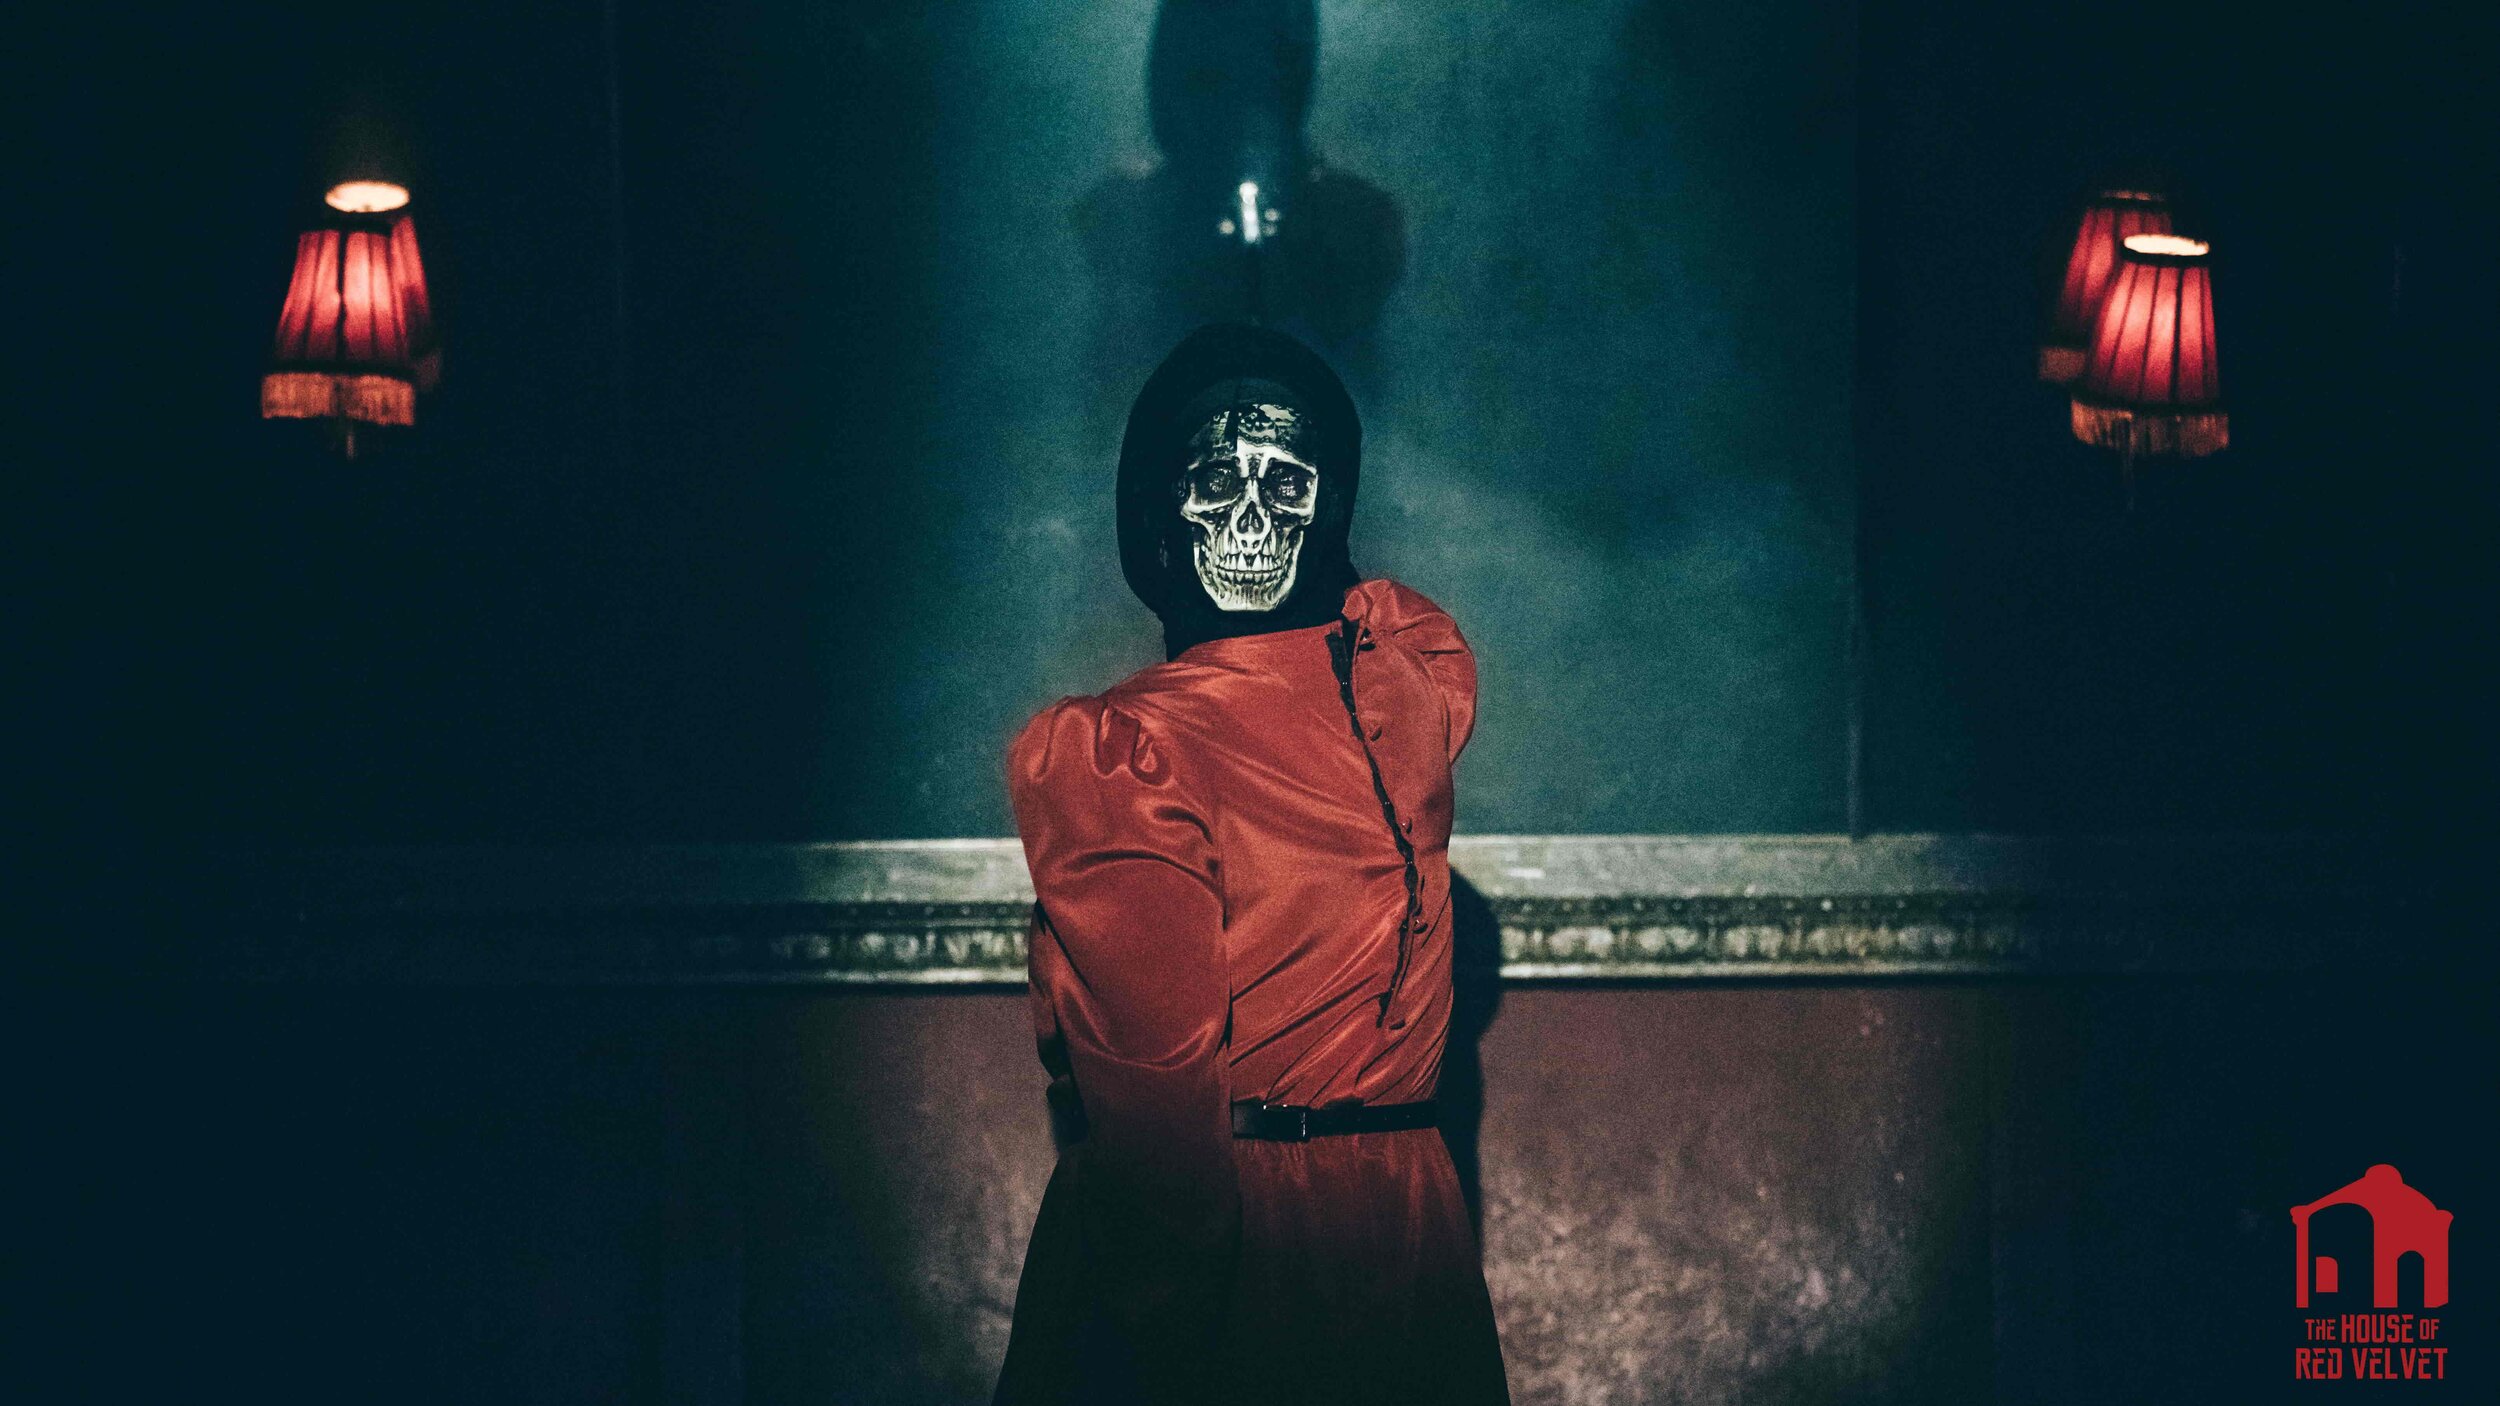 The House of Red Velvet. Avant-Garde artists in edgy art style. Skull mask. 